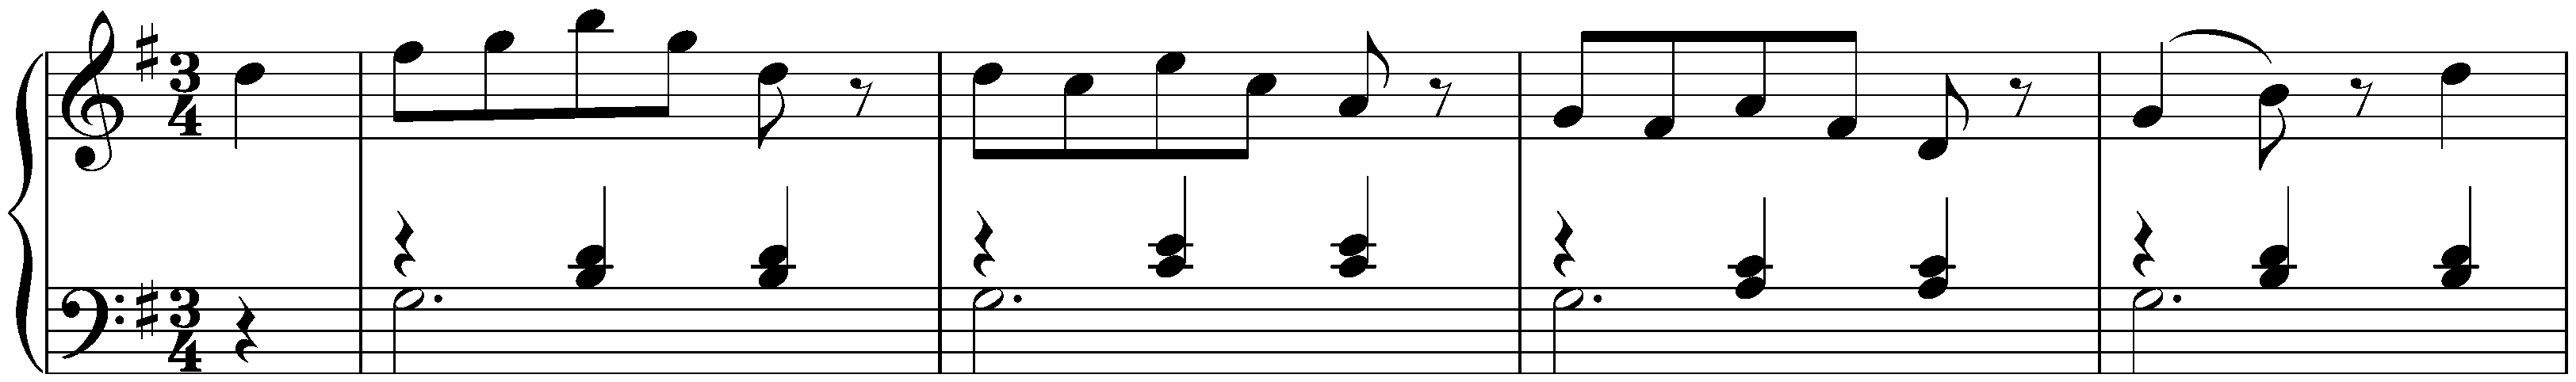 Twelve deutsche Tänze, Hob. IX:12; 1. G major